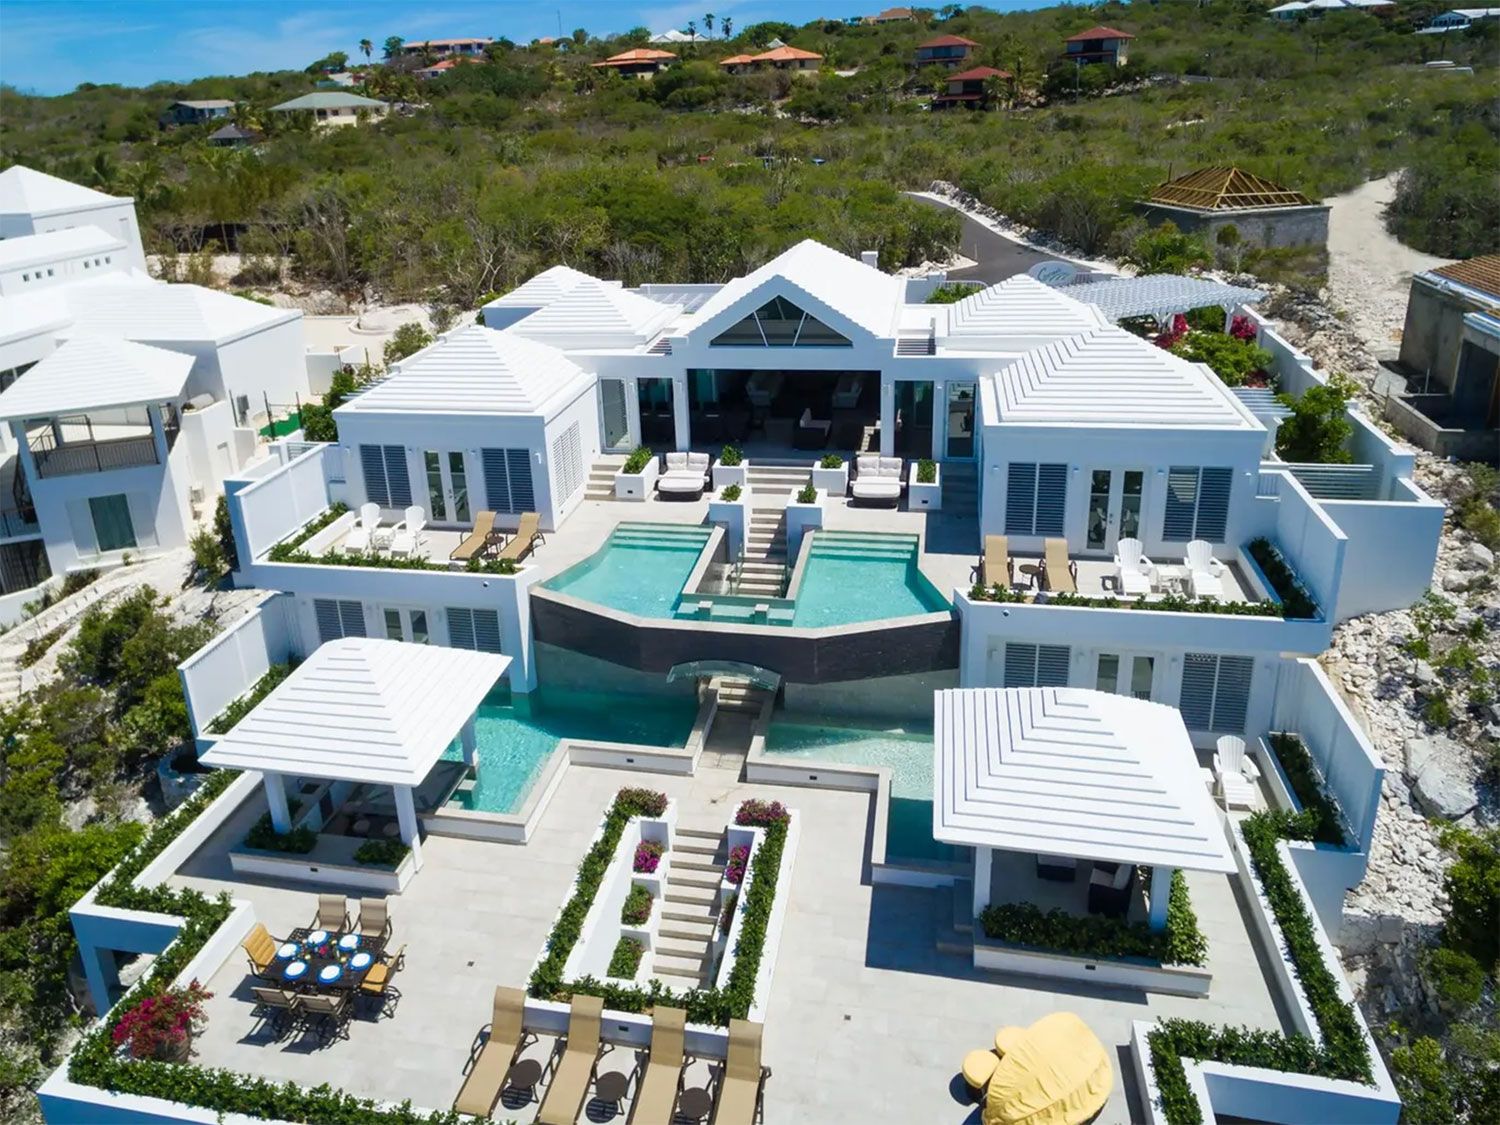 Cuatro increíbles casas caribeñas en espera de un nuevo propietario 1